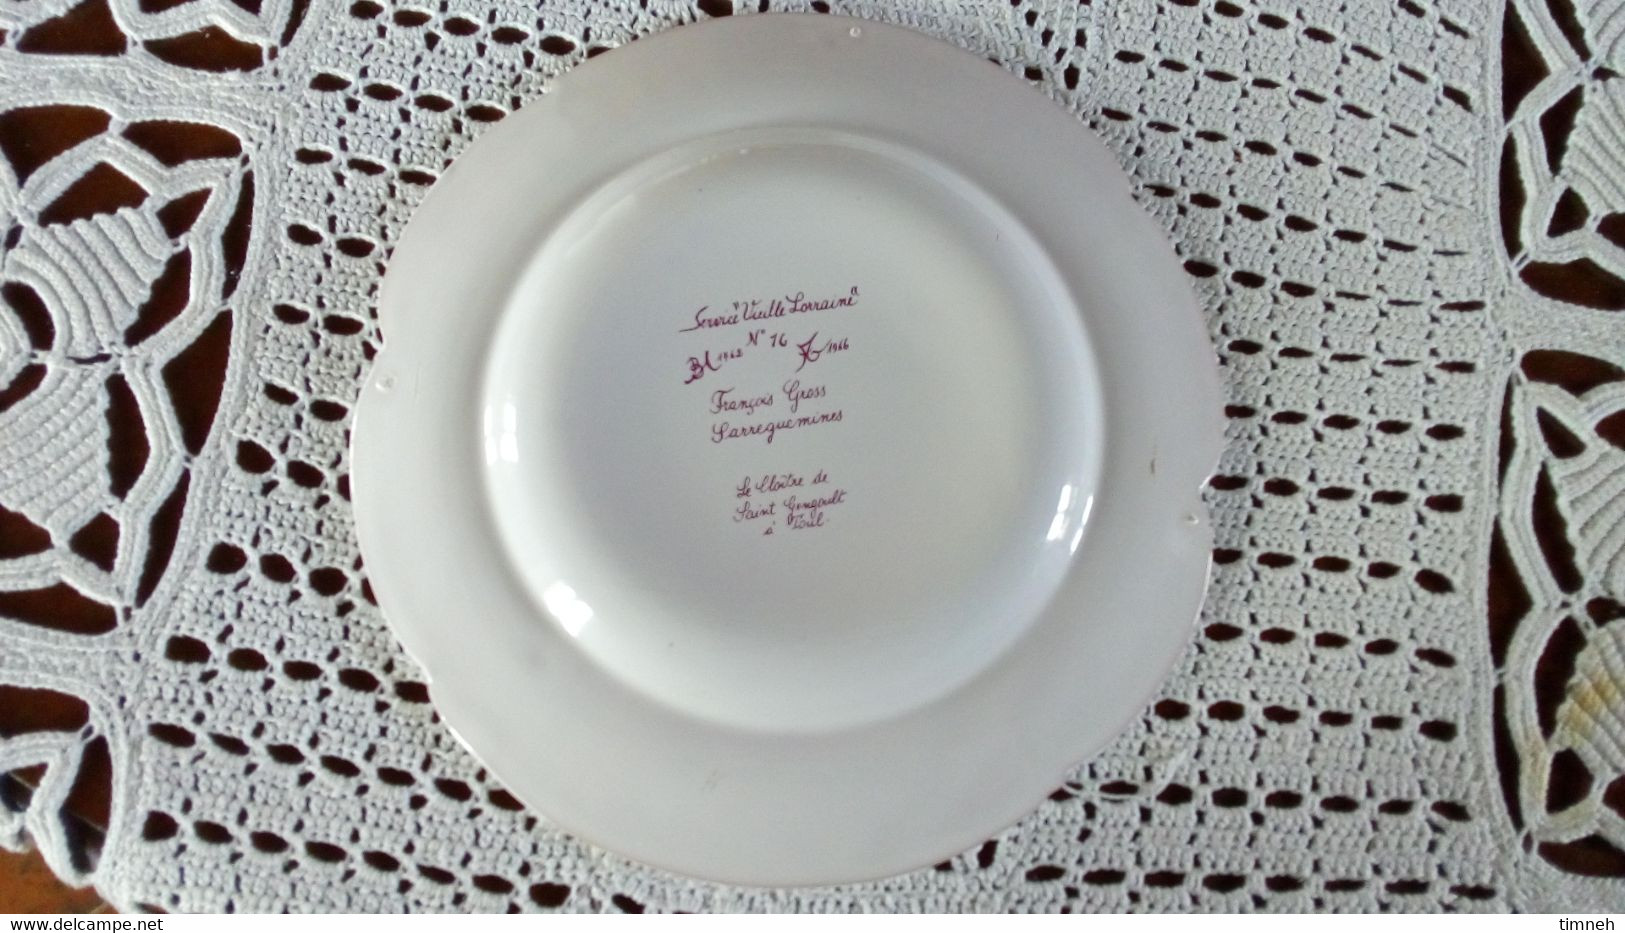 François GROSS Sarreguemines assiette plate - ST GENGOULT TOUL Cloître - Service Vieille Lorraine 1966 Bicentenaire